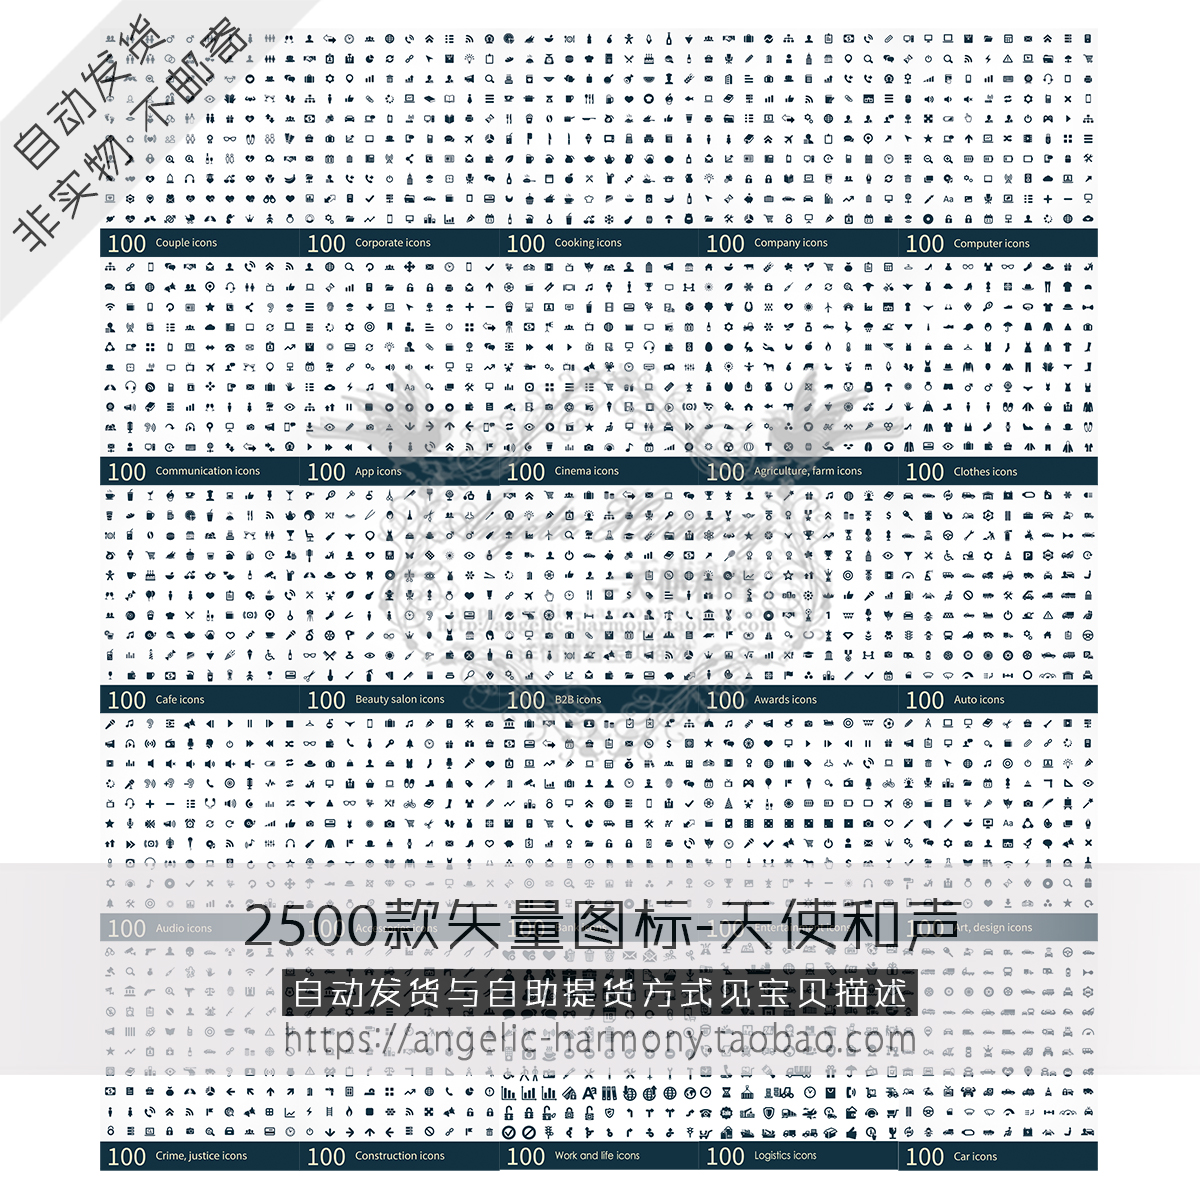 2500款UI扁平化图标 icon图标 各行业矢量设计源文件素材 189